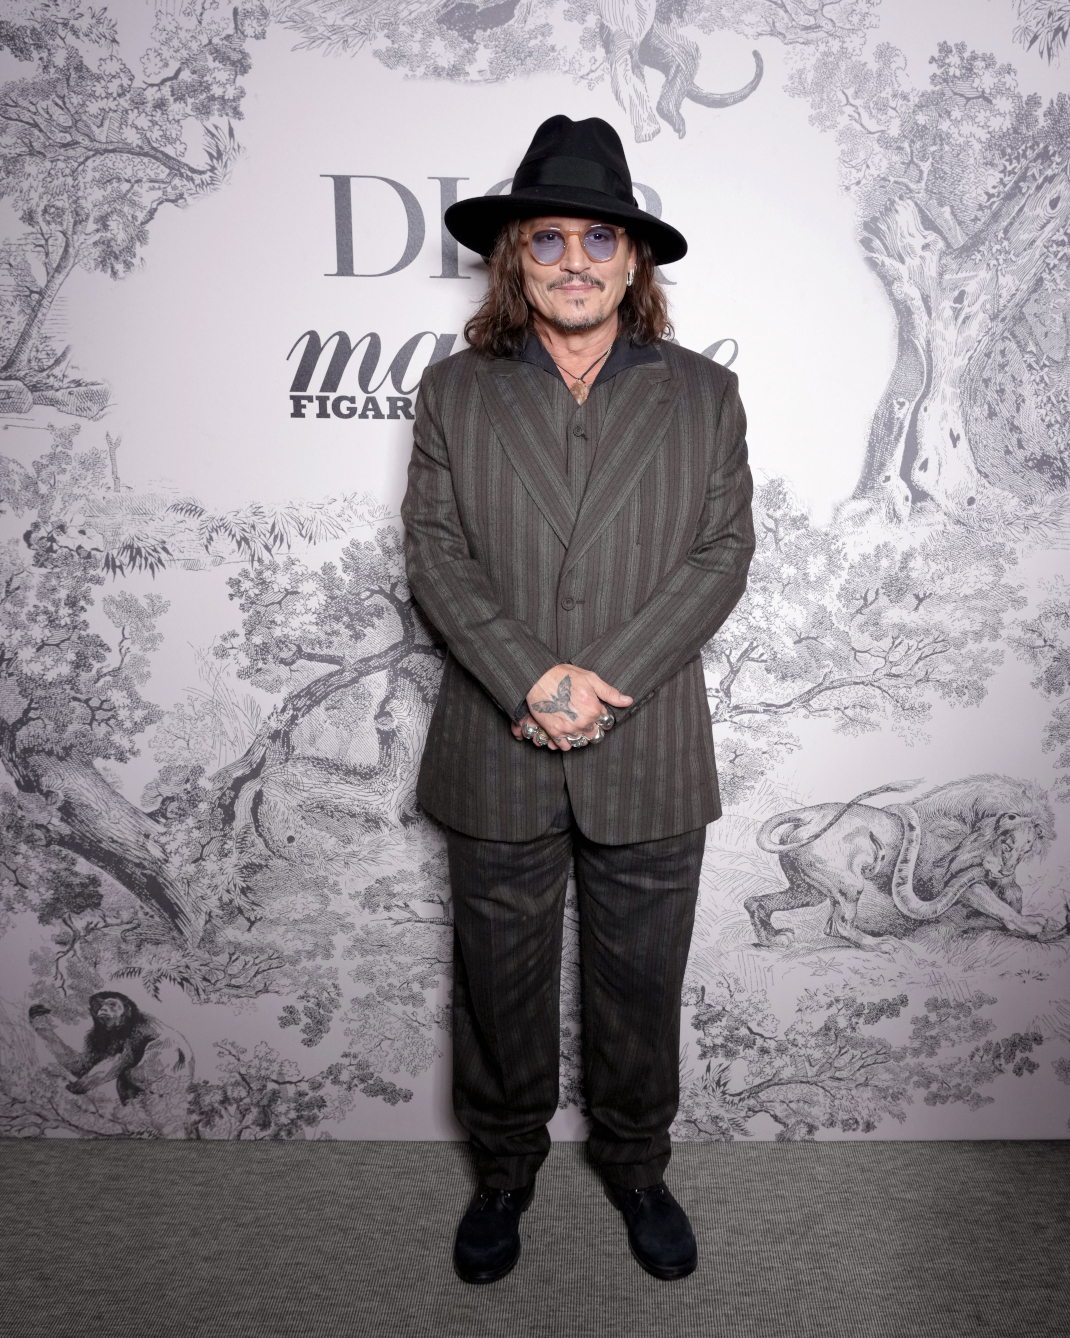 O Tζόνι Ντεπ σε πάρτι του οίκου Dior στις Κάννες -Εμφανίστηκε με καπέλο και στιλάτο κοστούμι